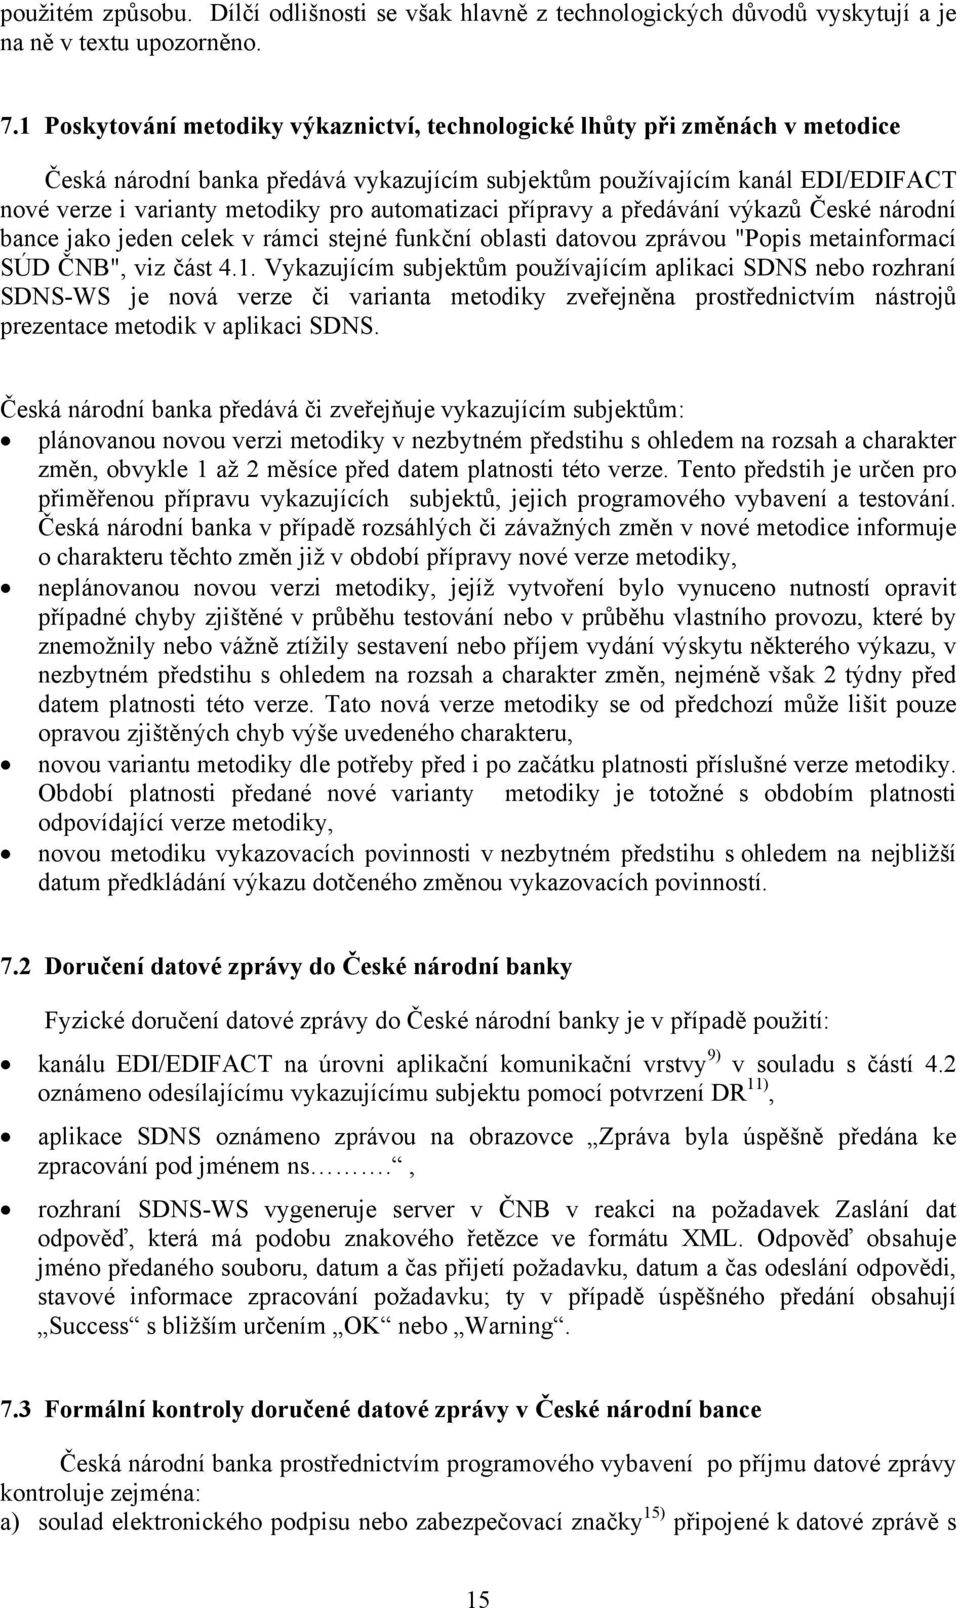 automatizaci přípravy a předávání výkazů České národní bance jako jeden celek v rámci stejné funkční oblasti datovou zprávou "Popis metainformací SÚD ČNB", viz část 4.1.